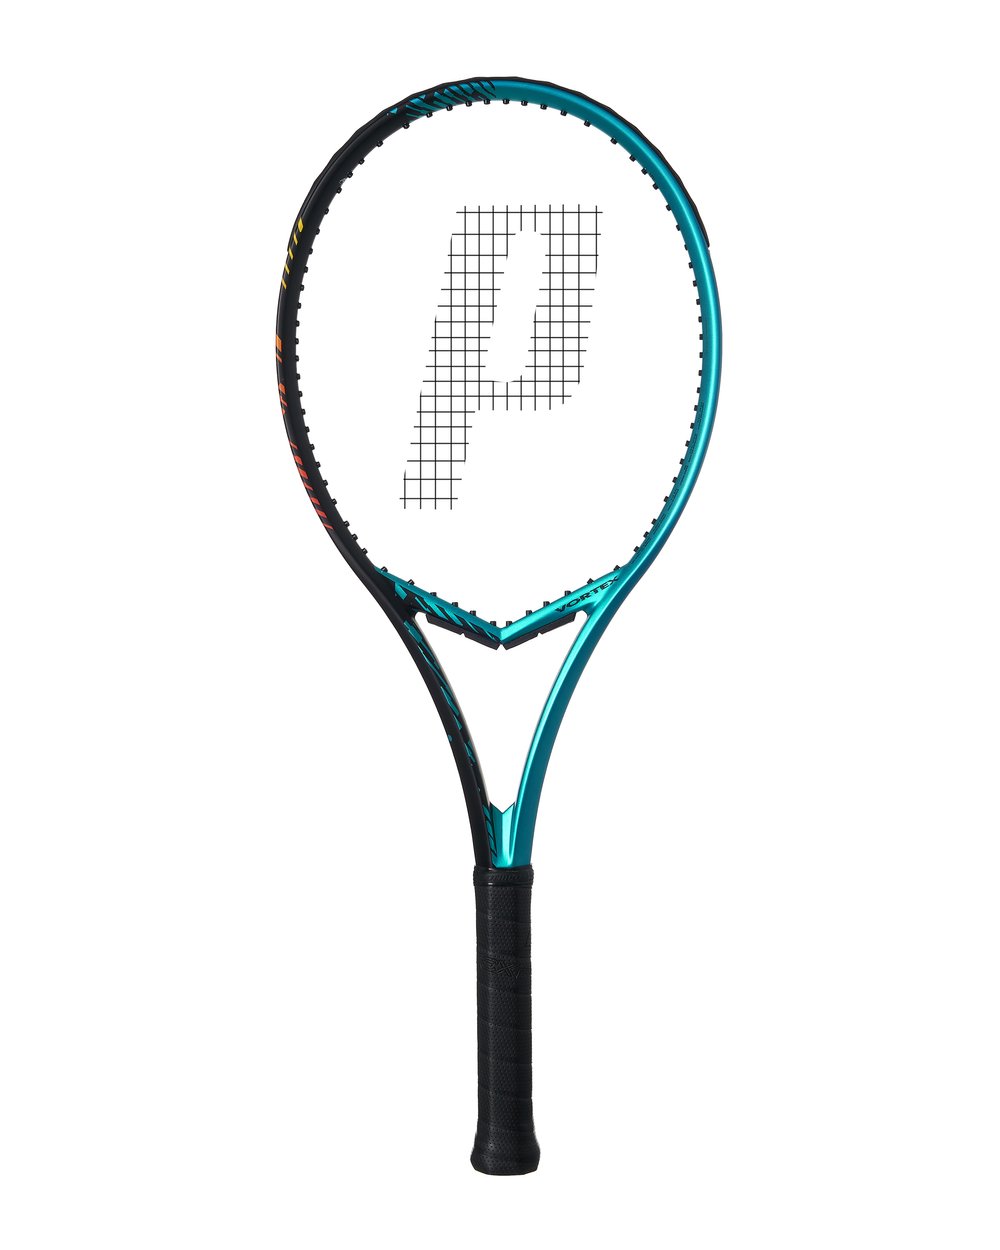 プリンス(Prince) VORTEX 100 ボルテックス 100 (300g) 海外正規品 硬式テニスラケット  7T53R191-ブラック×ブルー(22y10m)[NC][次回使えるクーポンプレゼント] | アミュゼスポーツ